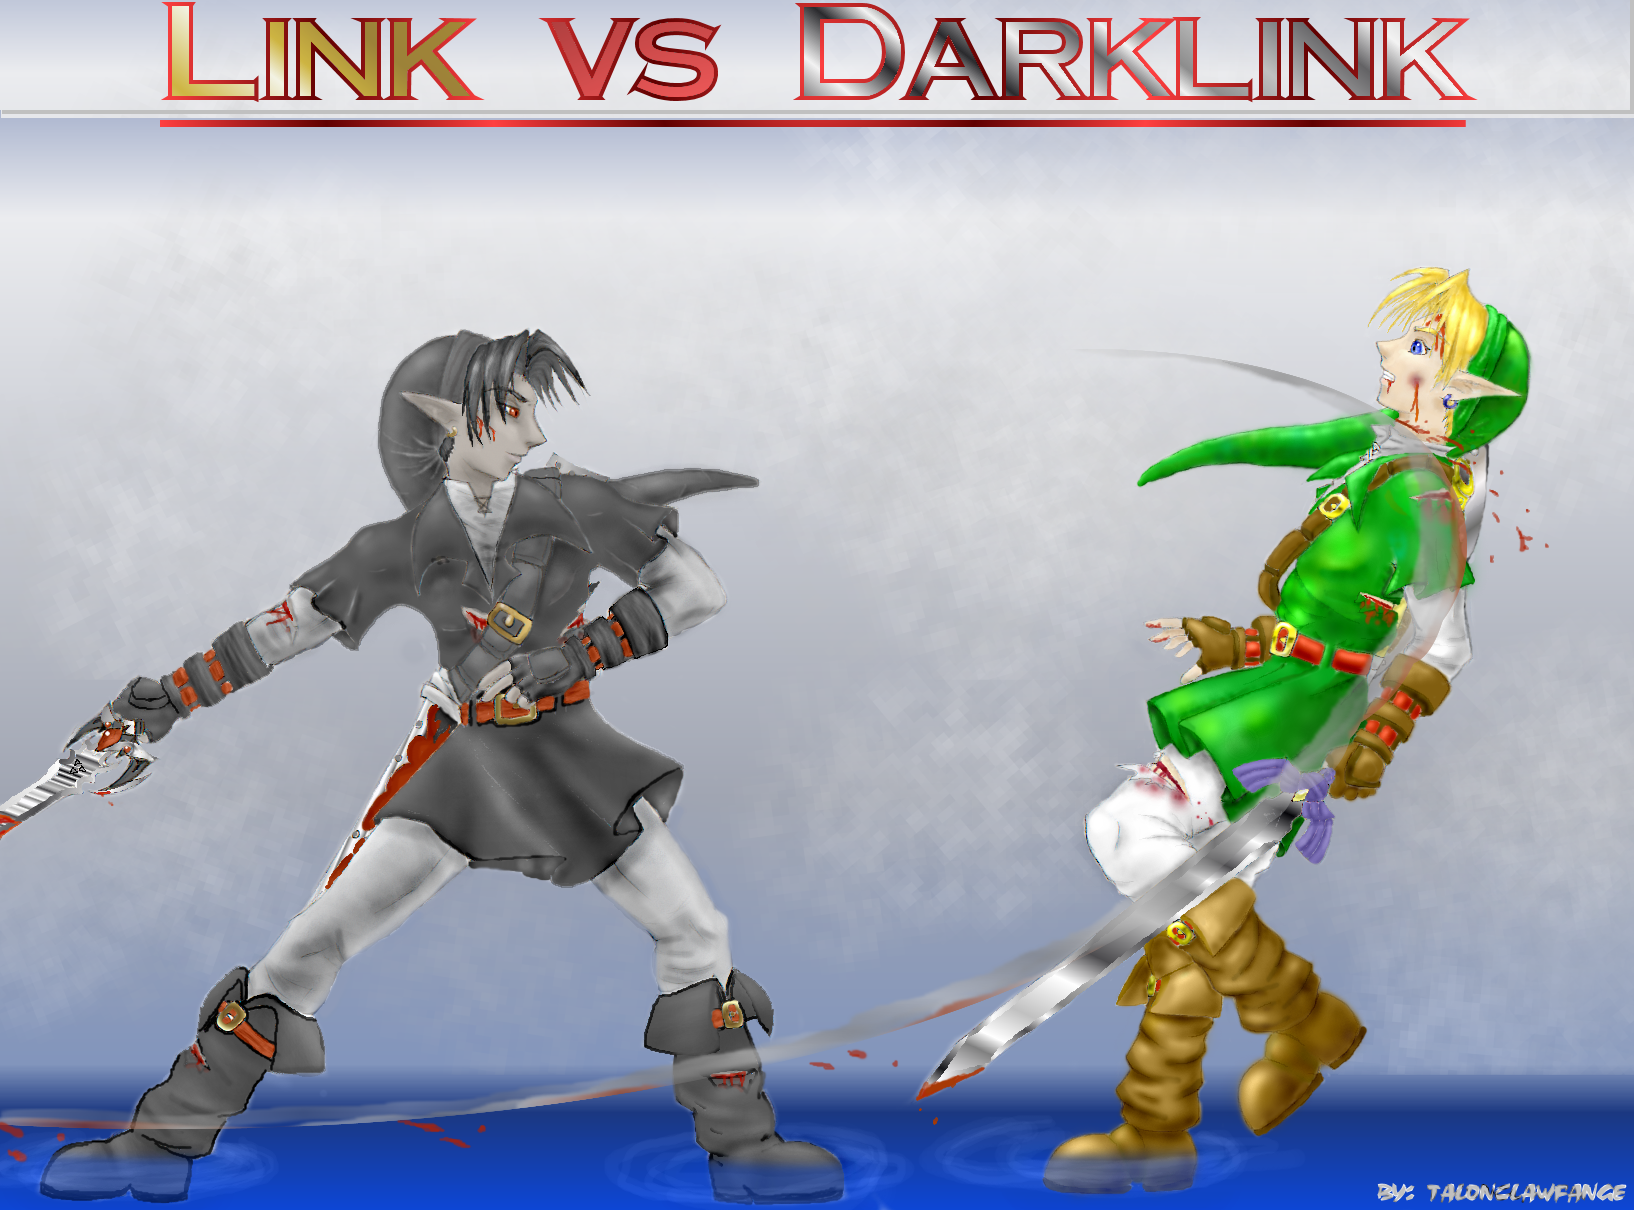 Versus Link